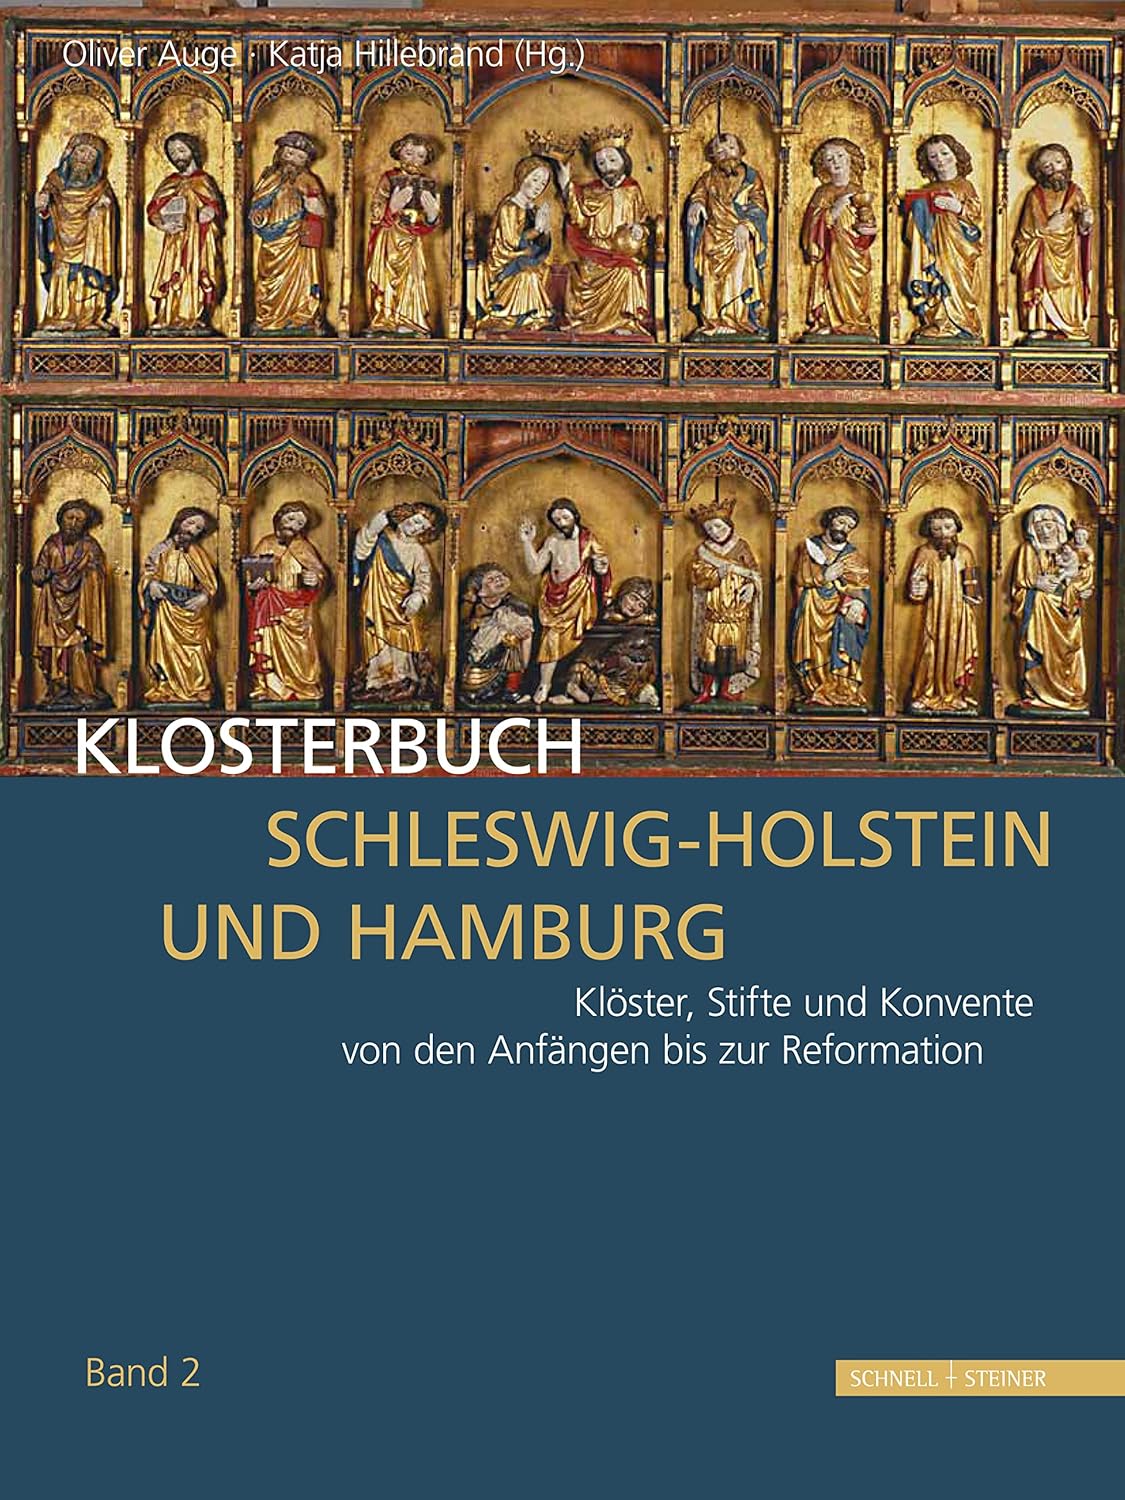 Klosterbuch Schleswig-Holstein